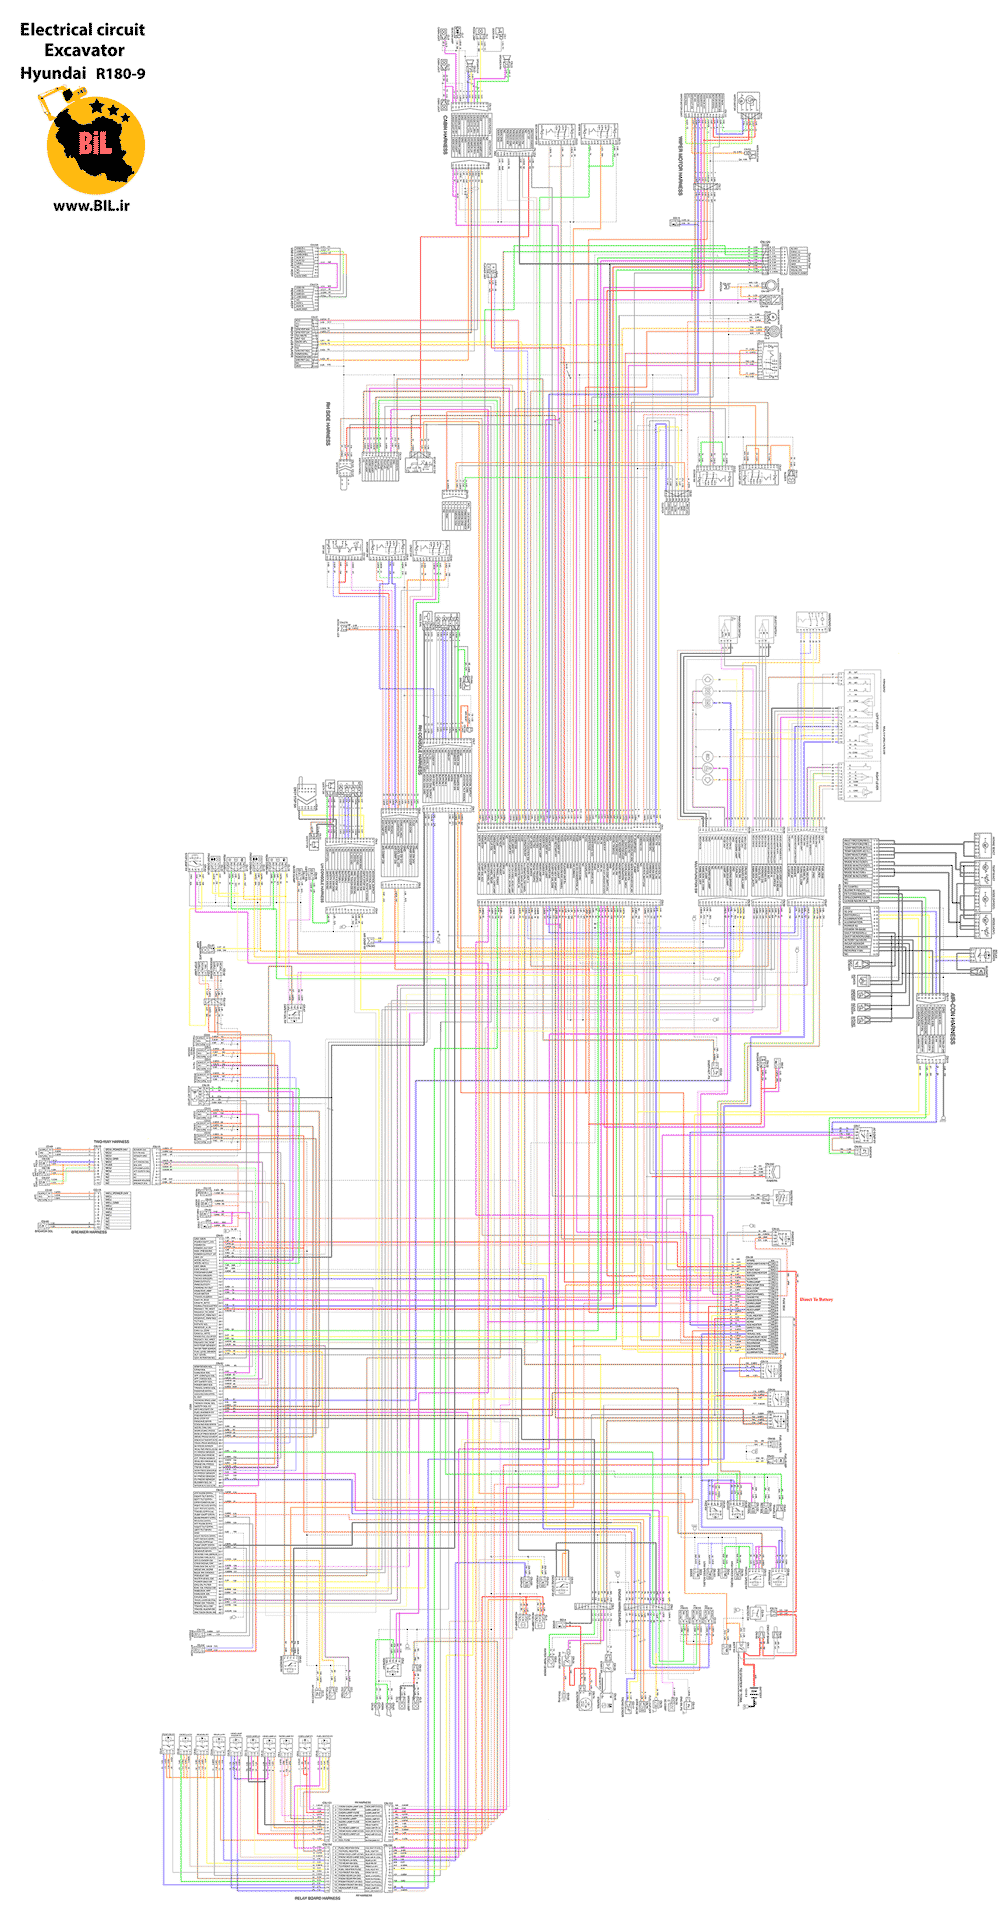 نقشه رنگی برق بیل مکانیکی هیوندای R180W-9S